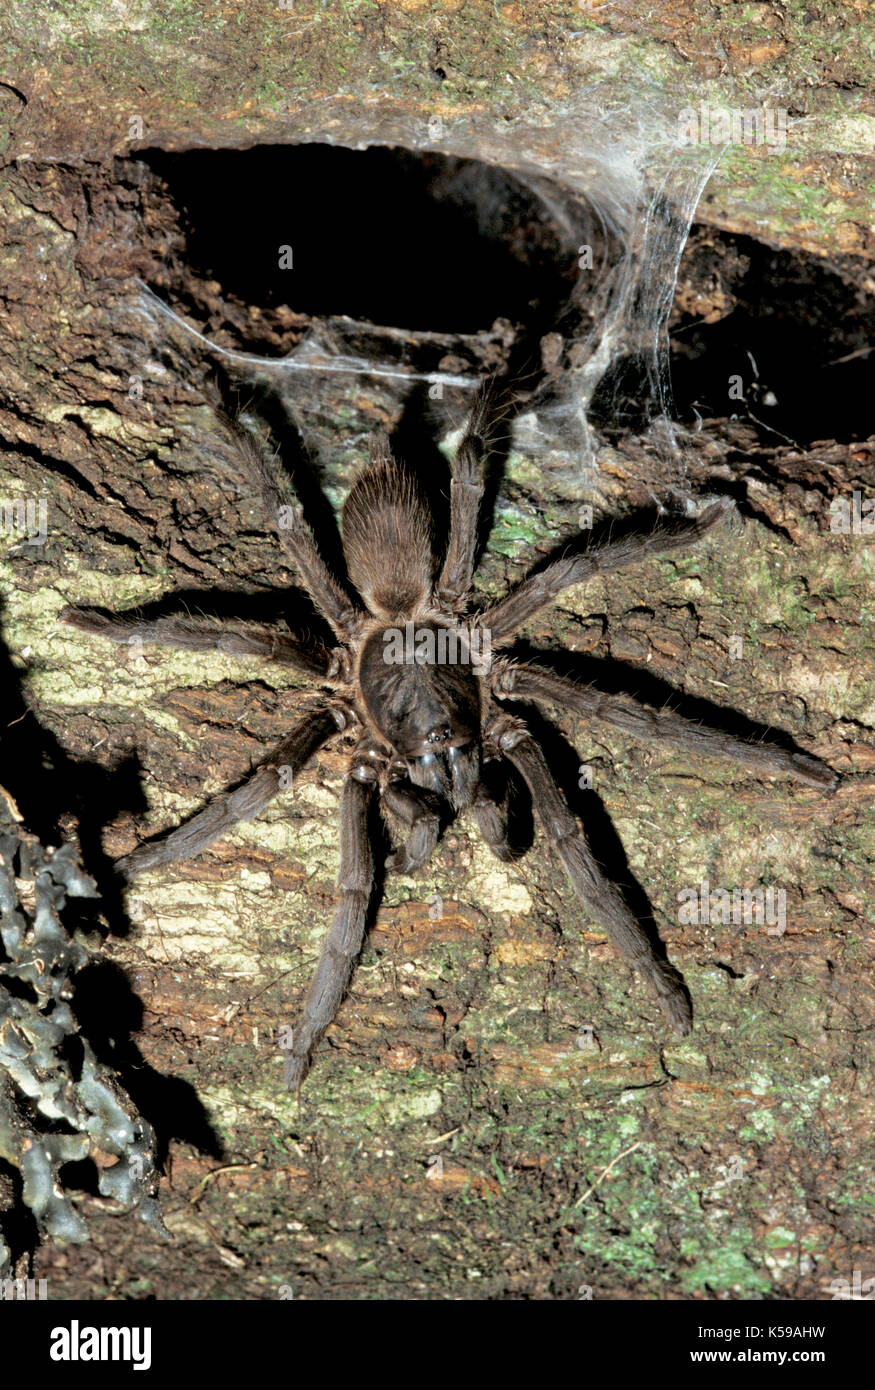 Tarantula, sp., desconocida: la familia Theraphosidae, aboreal por nido el agujero de árbol, Sabah borneo Foto de stock